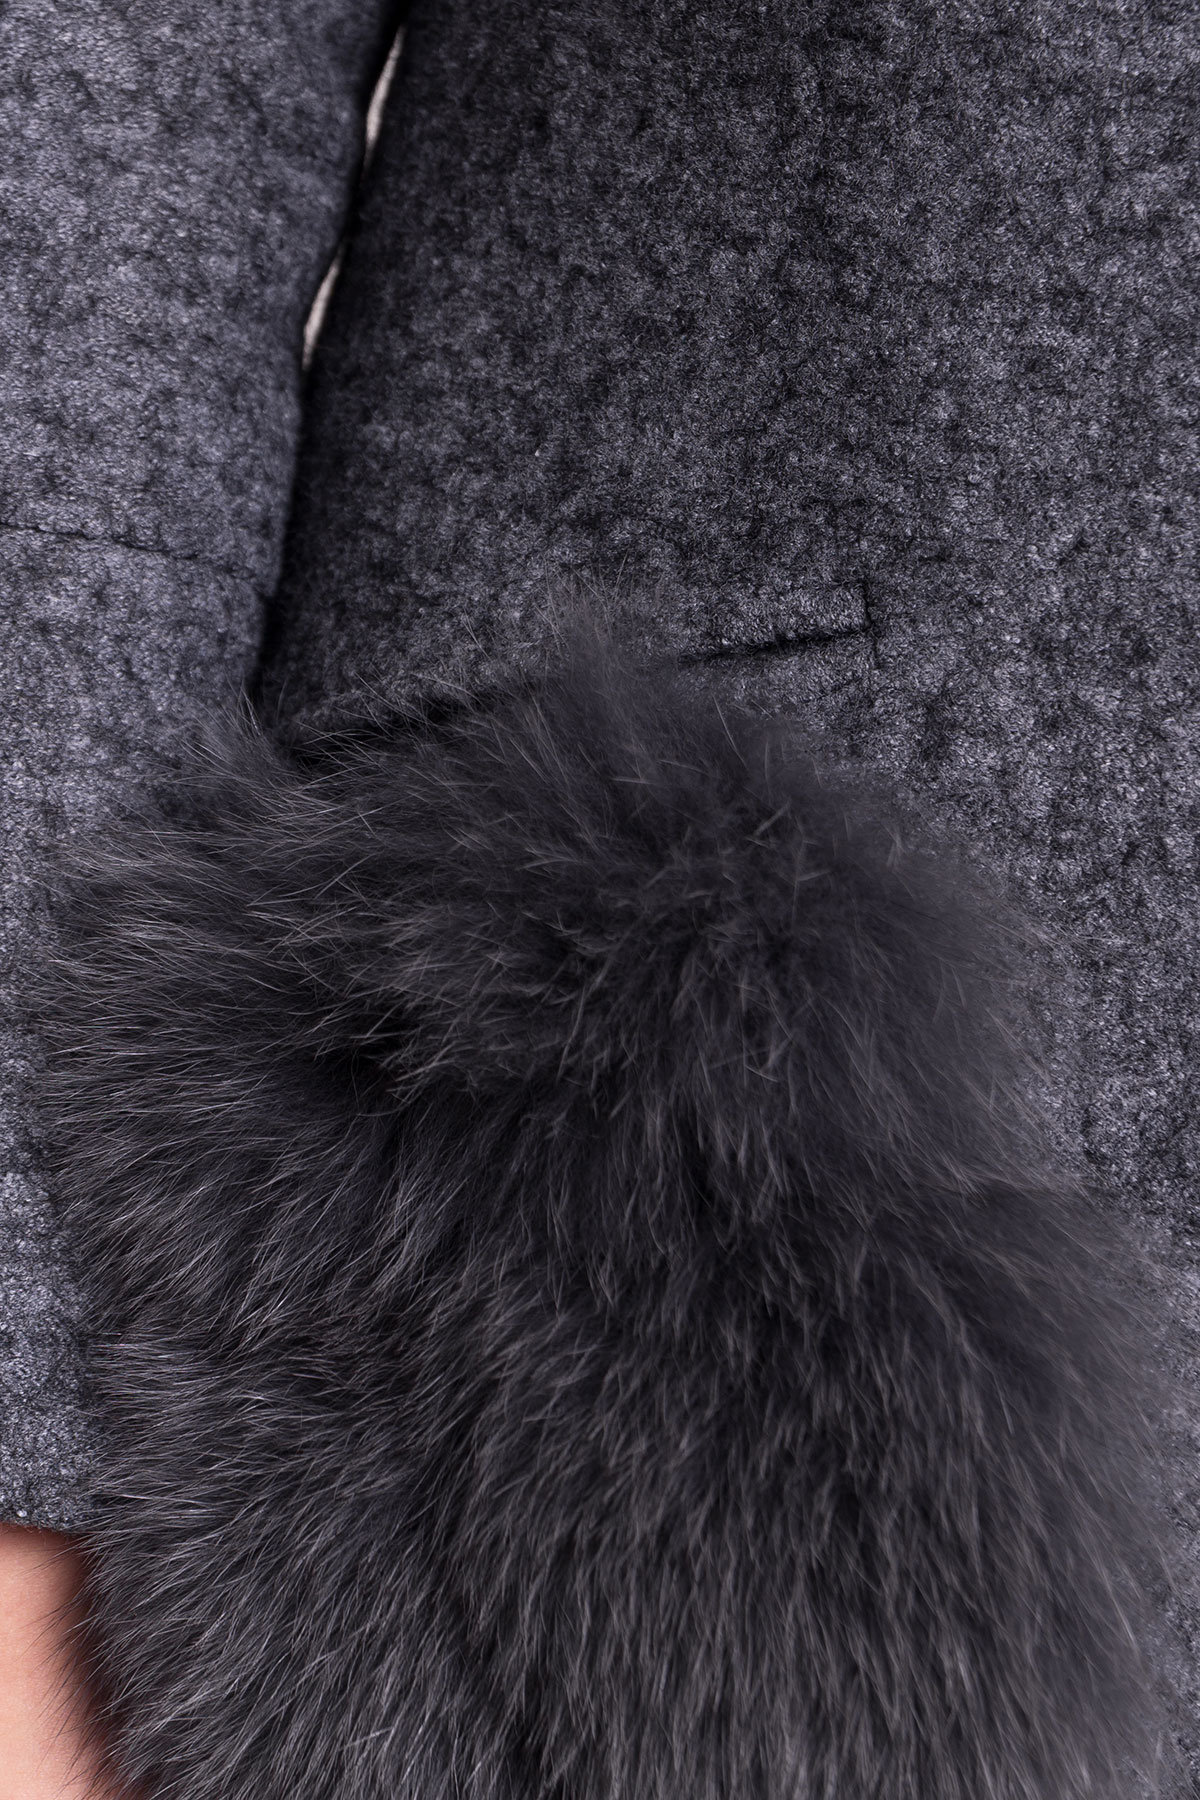 Пальто зима Анита 4181 АРТ. 20629 Цвет: Серый Темный LW-5 - фото 6, интернет магазин tm-modus.ru